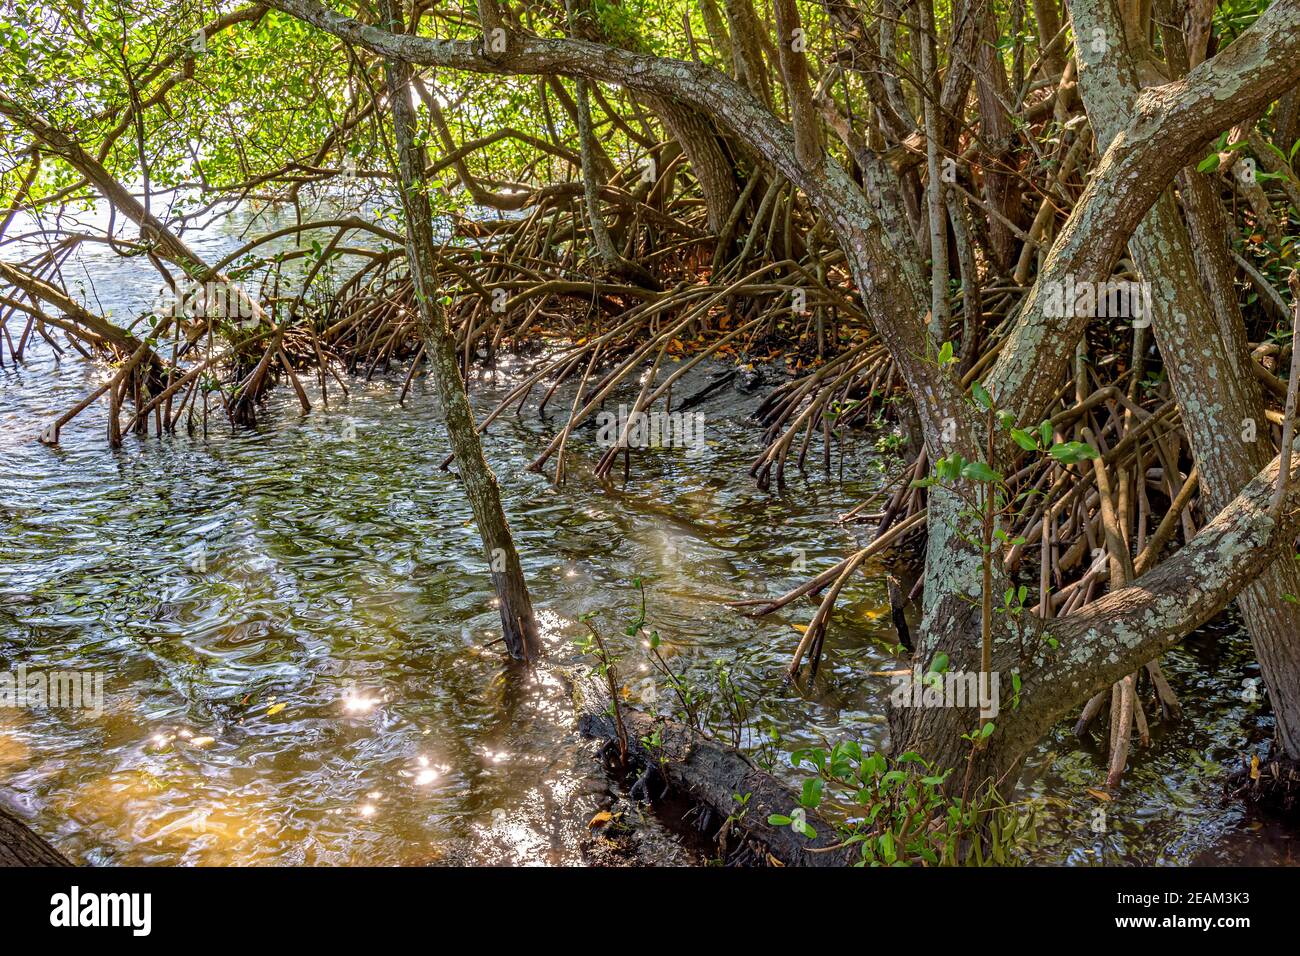 Raíces y vegetación acuática típica de los manglares comunes de Brasil ecosistema tropical Foto de stock